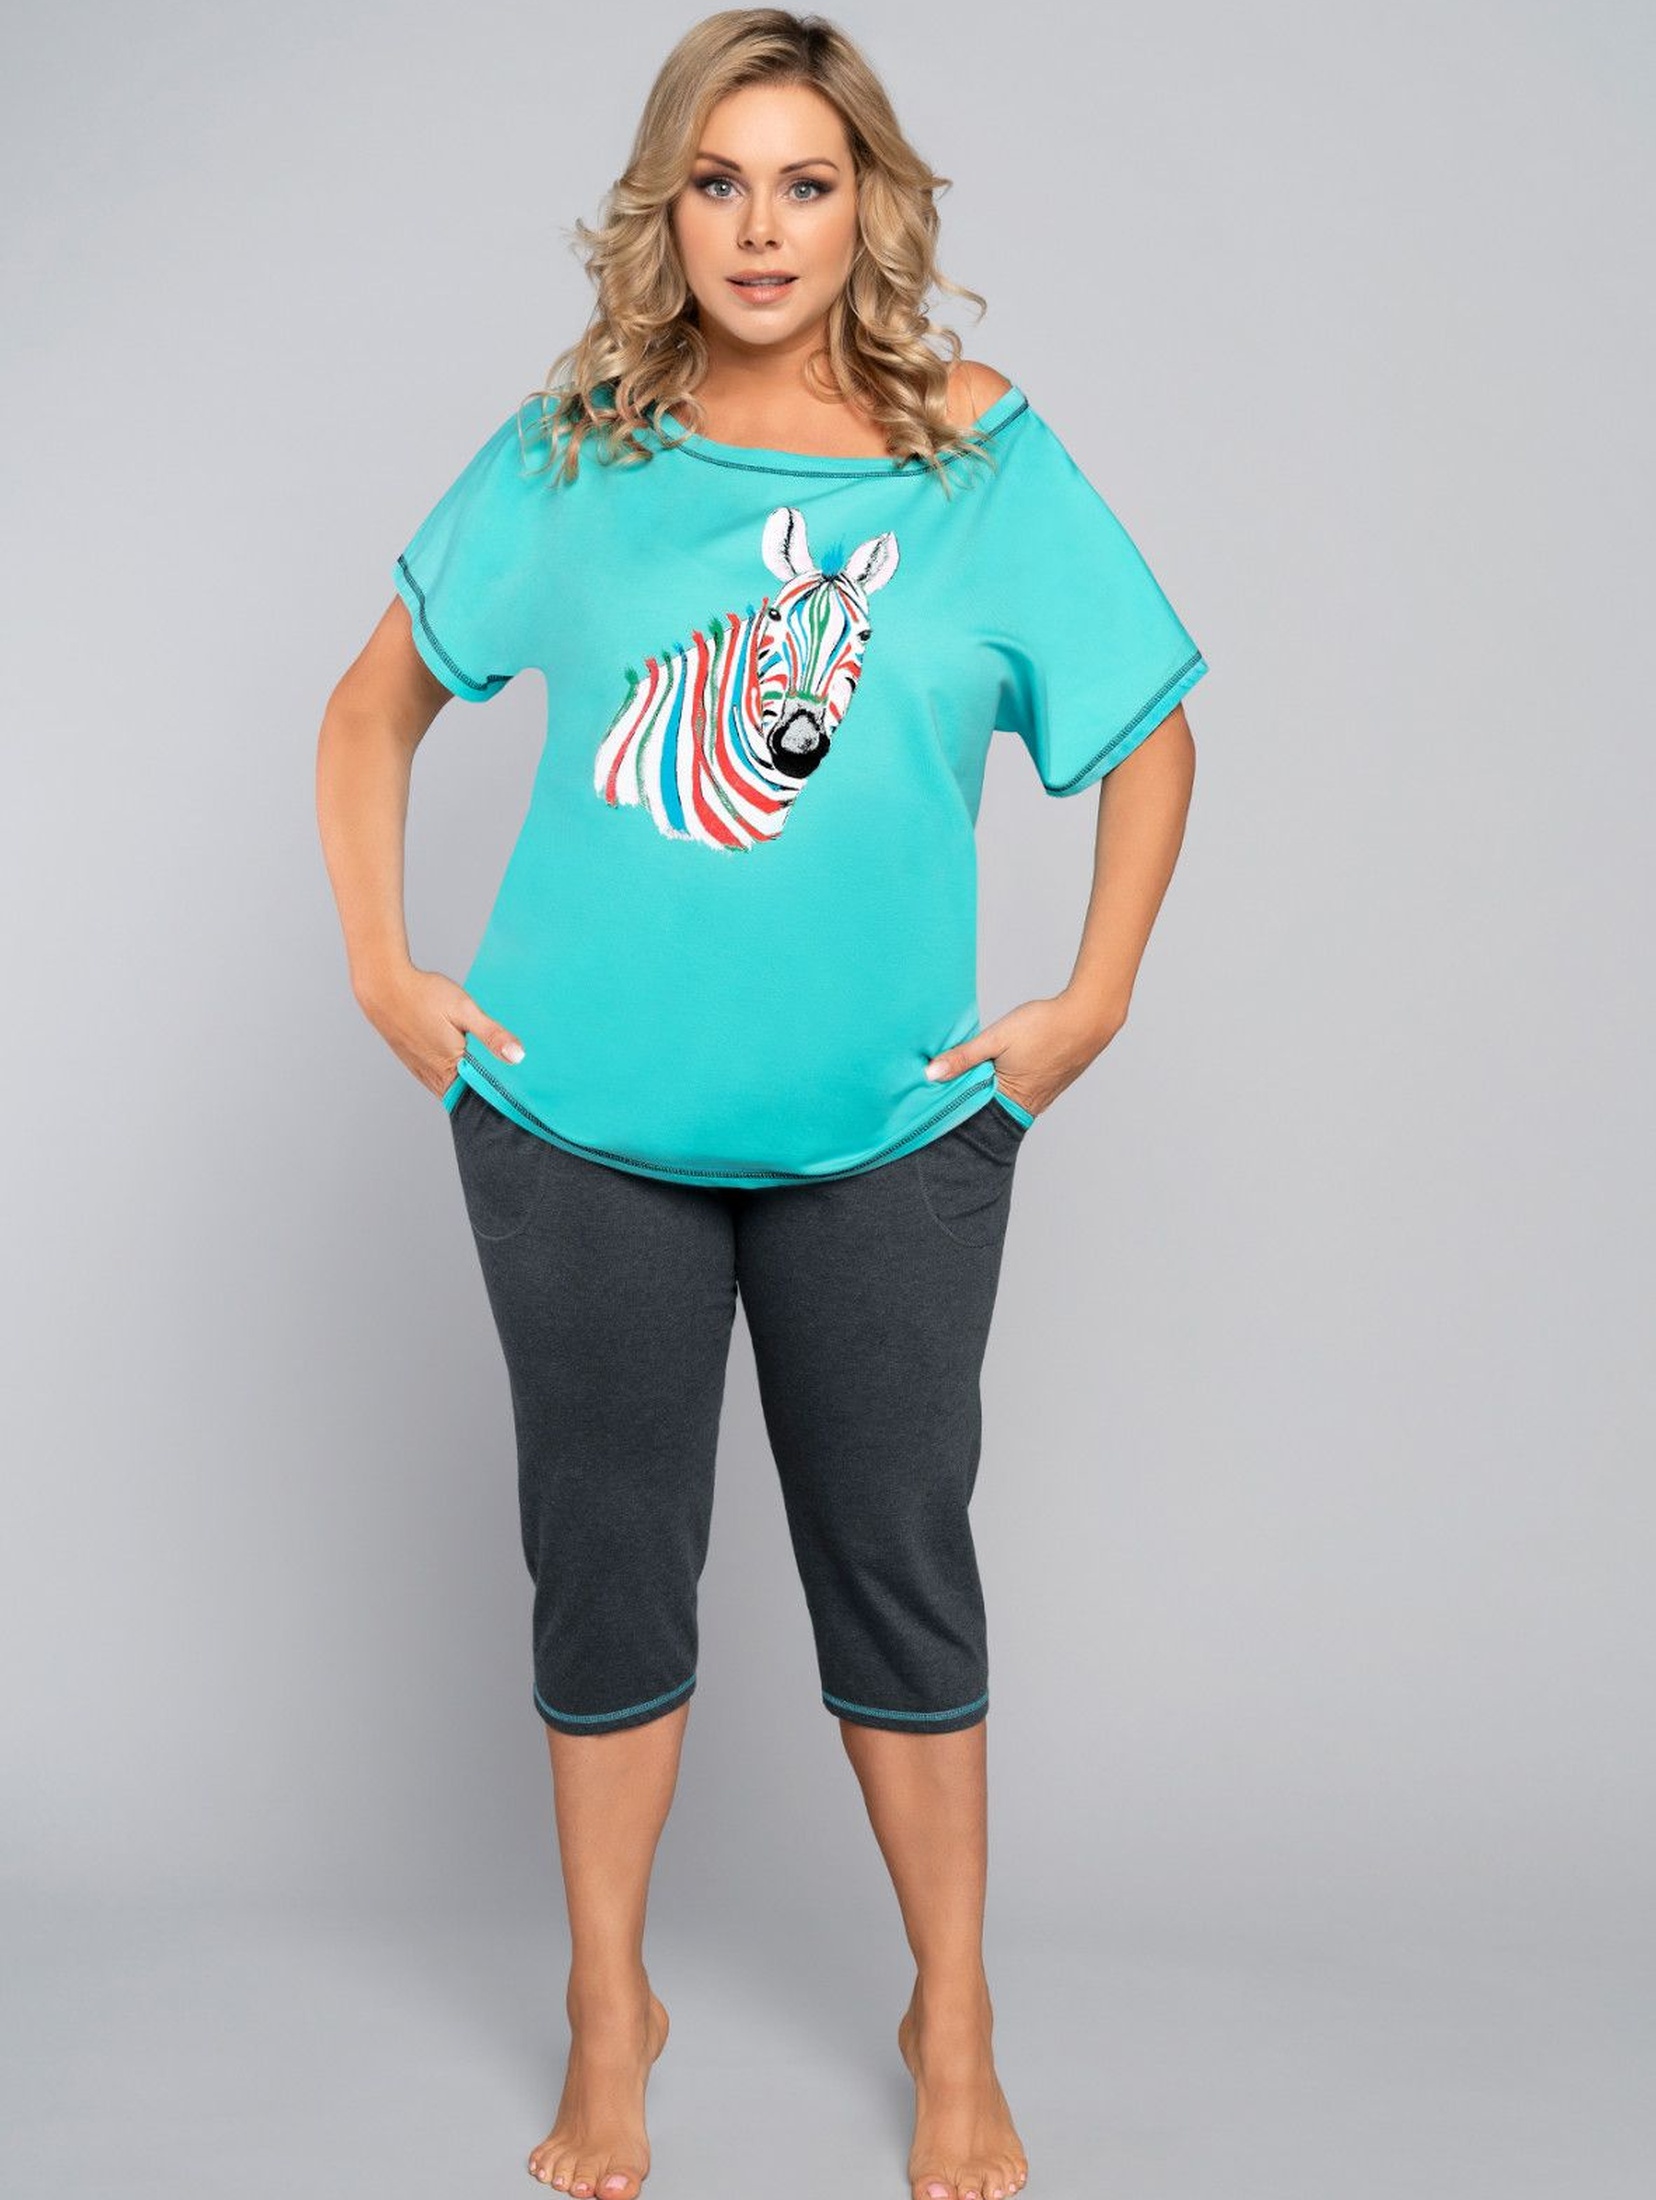 Bawełniana piżama damska z zebrą - 3/4 spodnie i turkusowy t-shirt